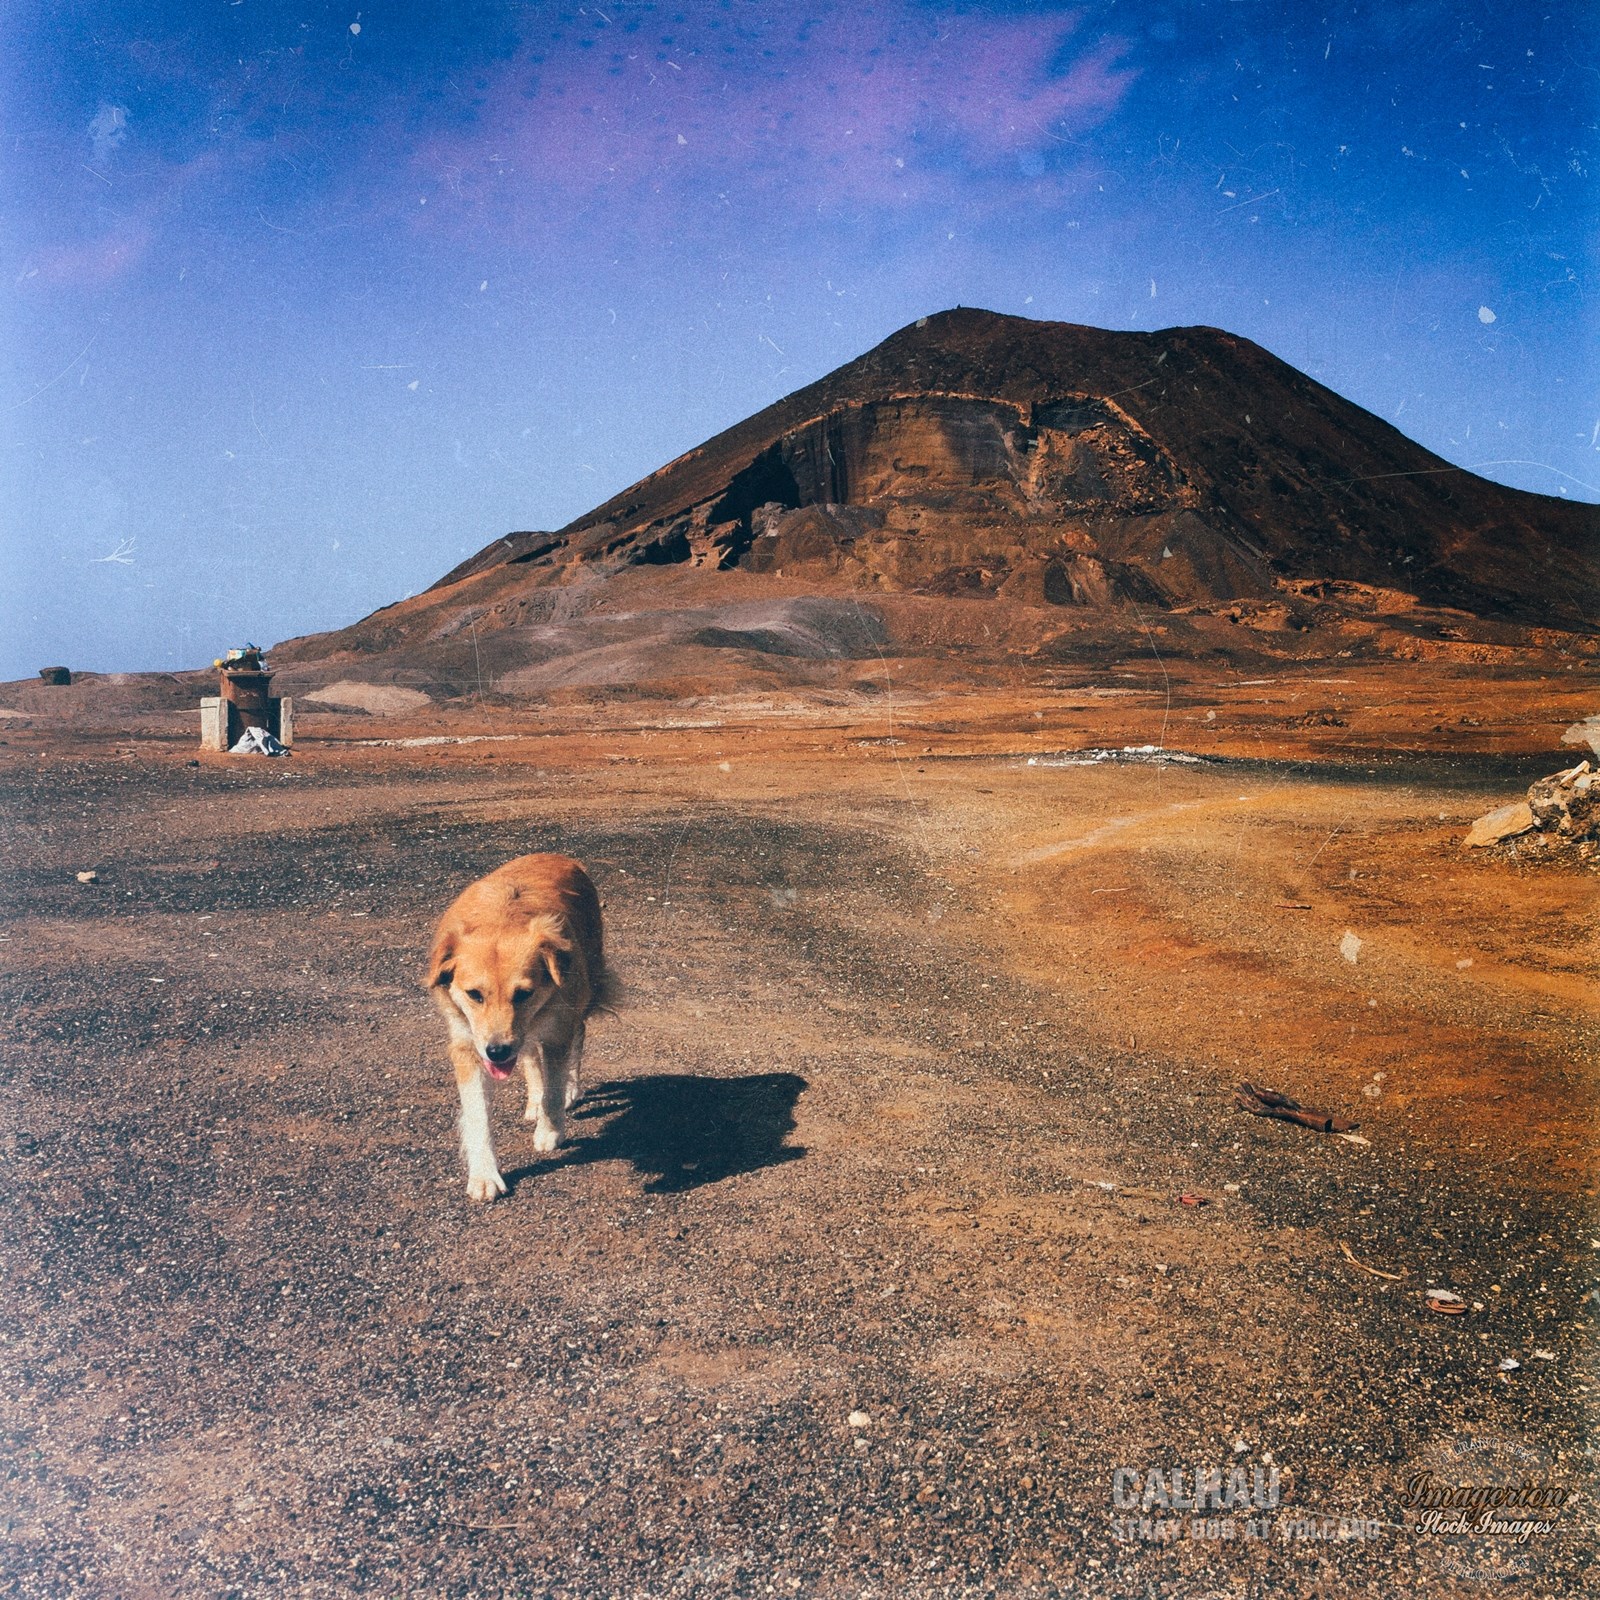 Stray dog walking near the volcano